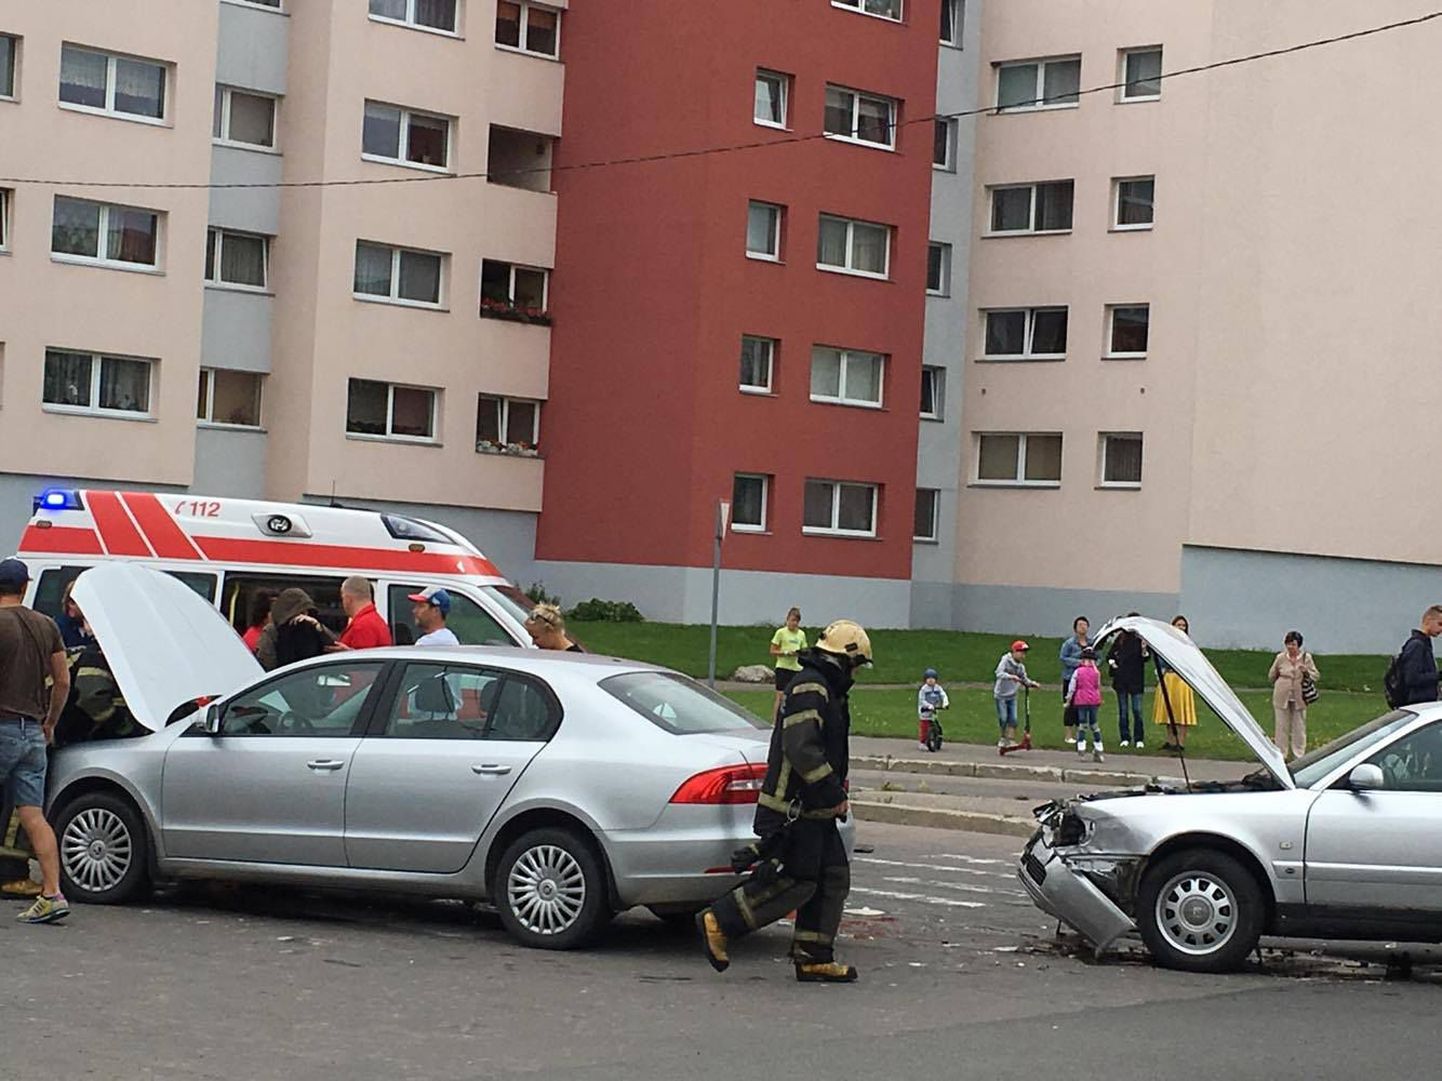 Liiklusõnnetus Pärnus Mai ja Papiniidu tänava ristmikul.